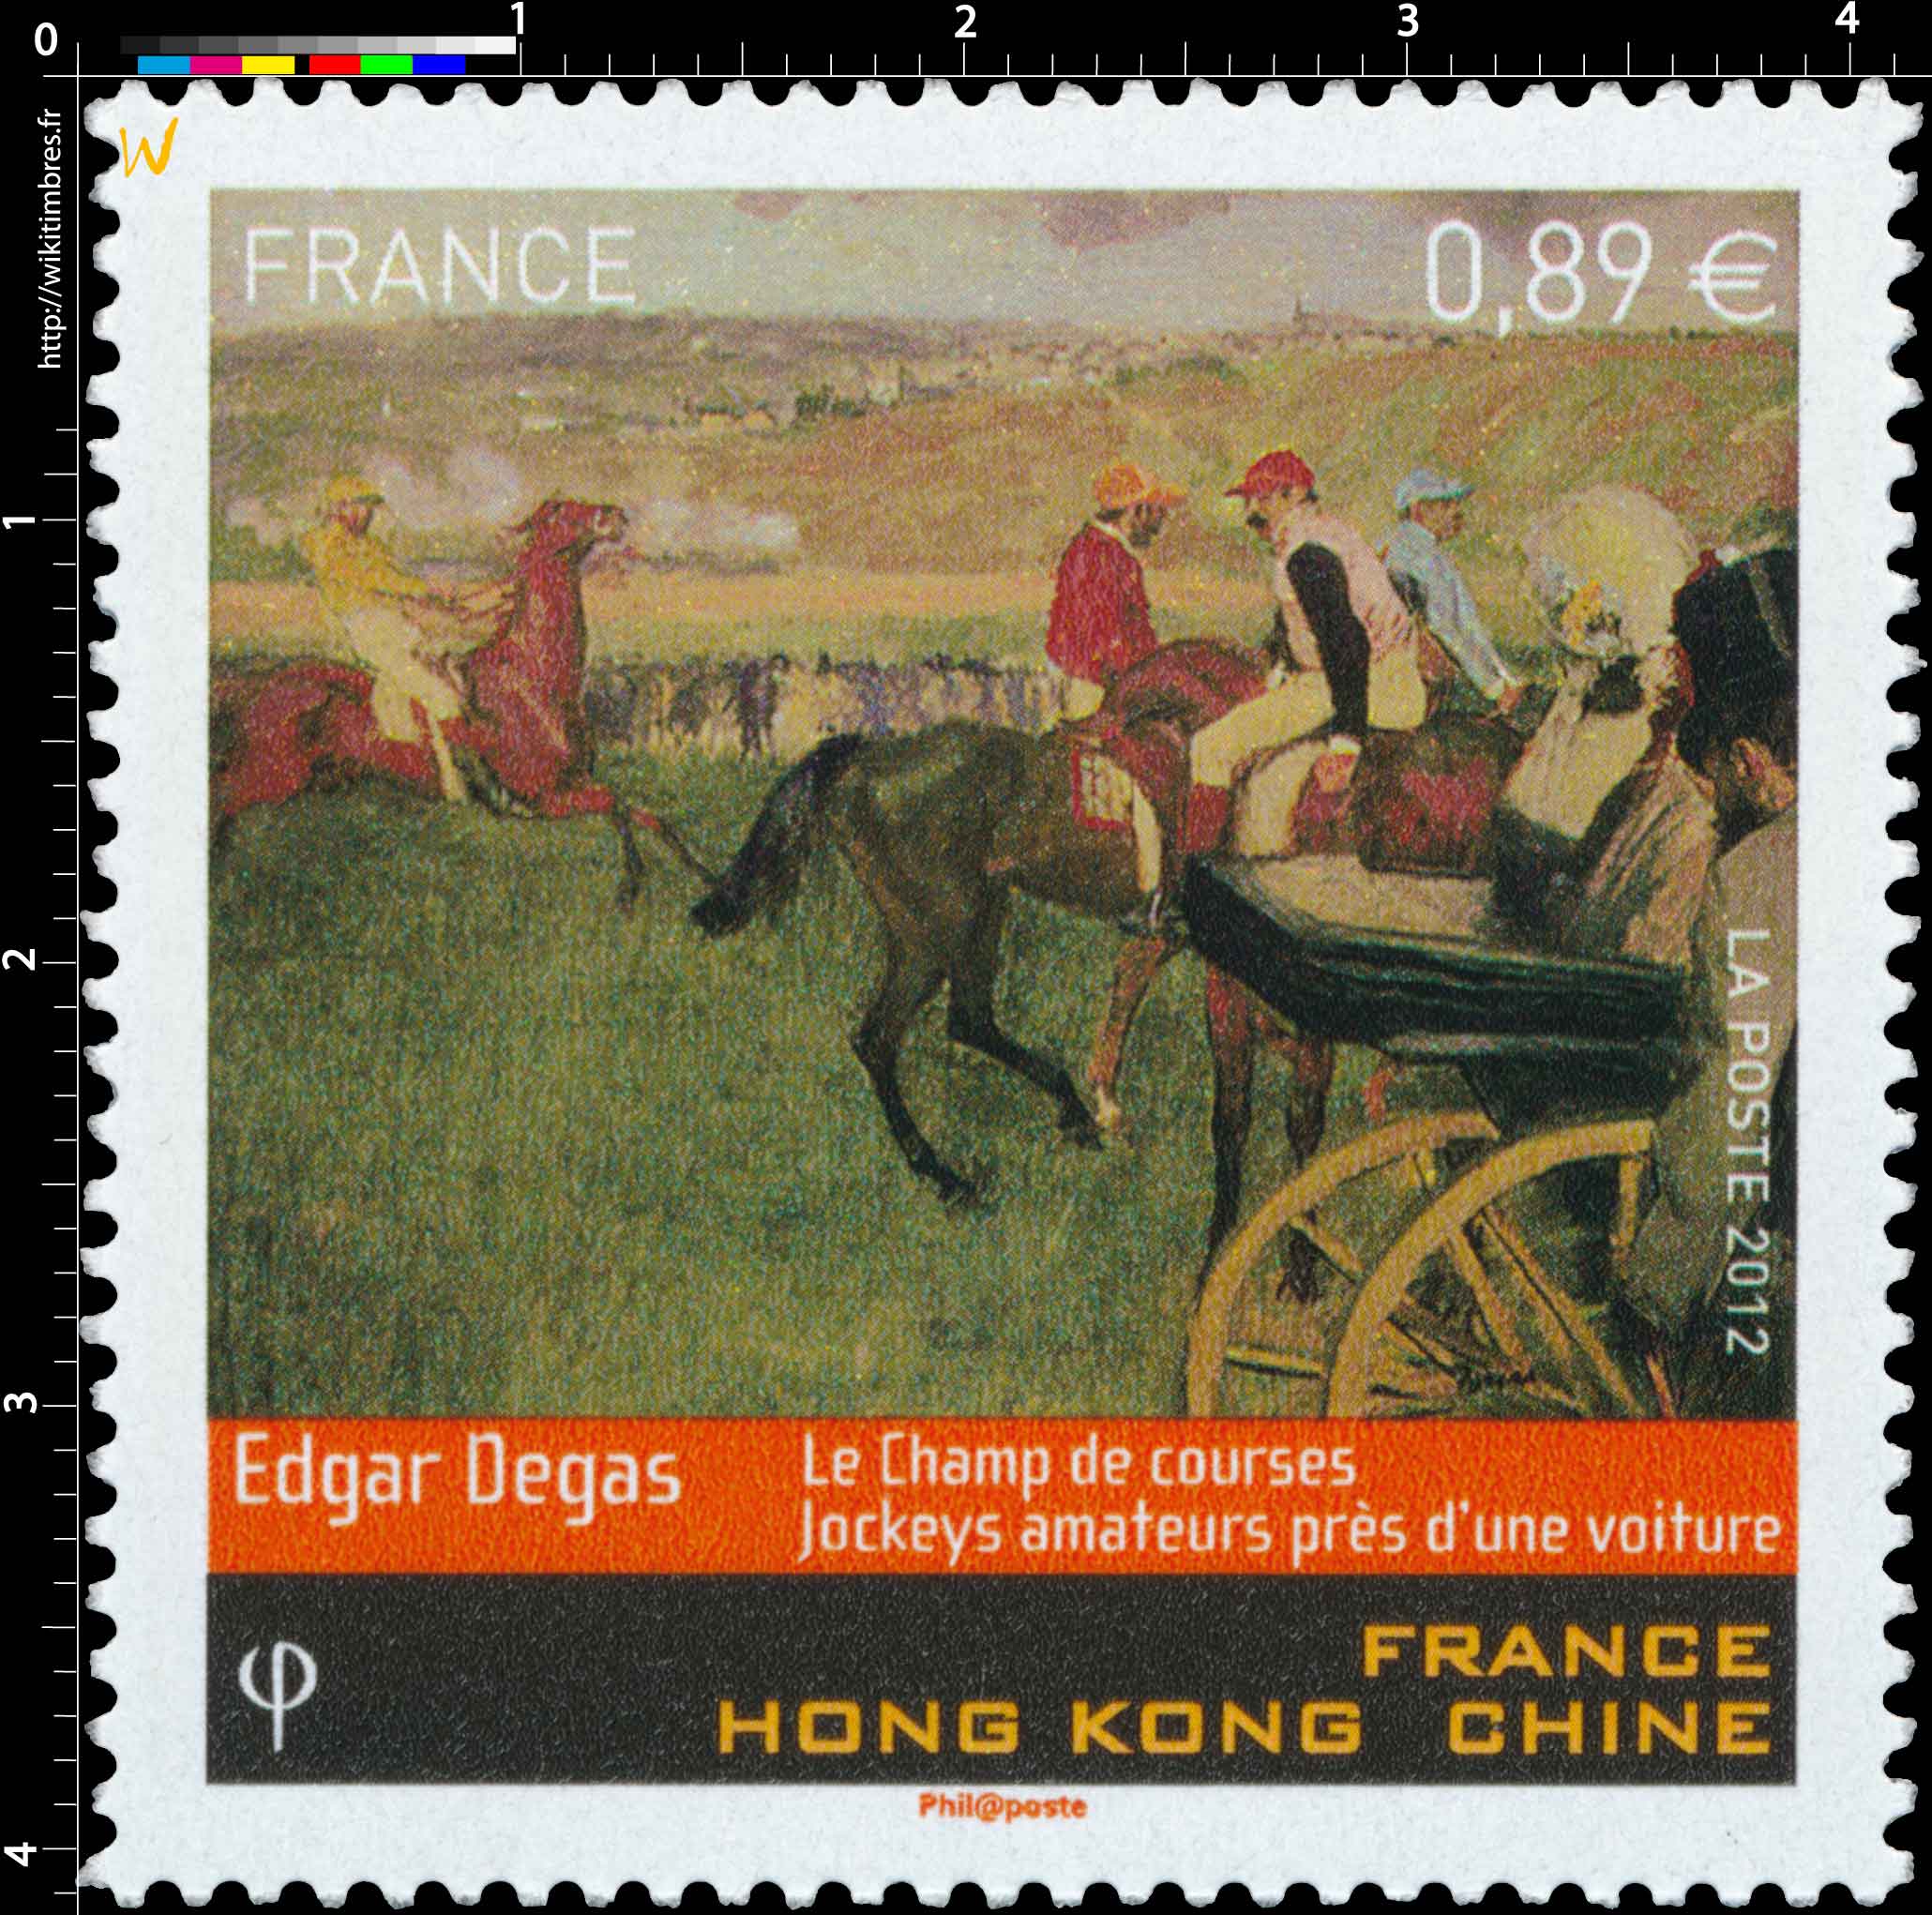 2012 Edgar Degas le champ de courses jockeys amateurs près d'une voiture France Hong Kong Chine